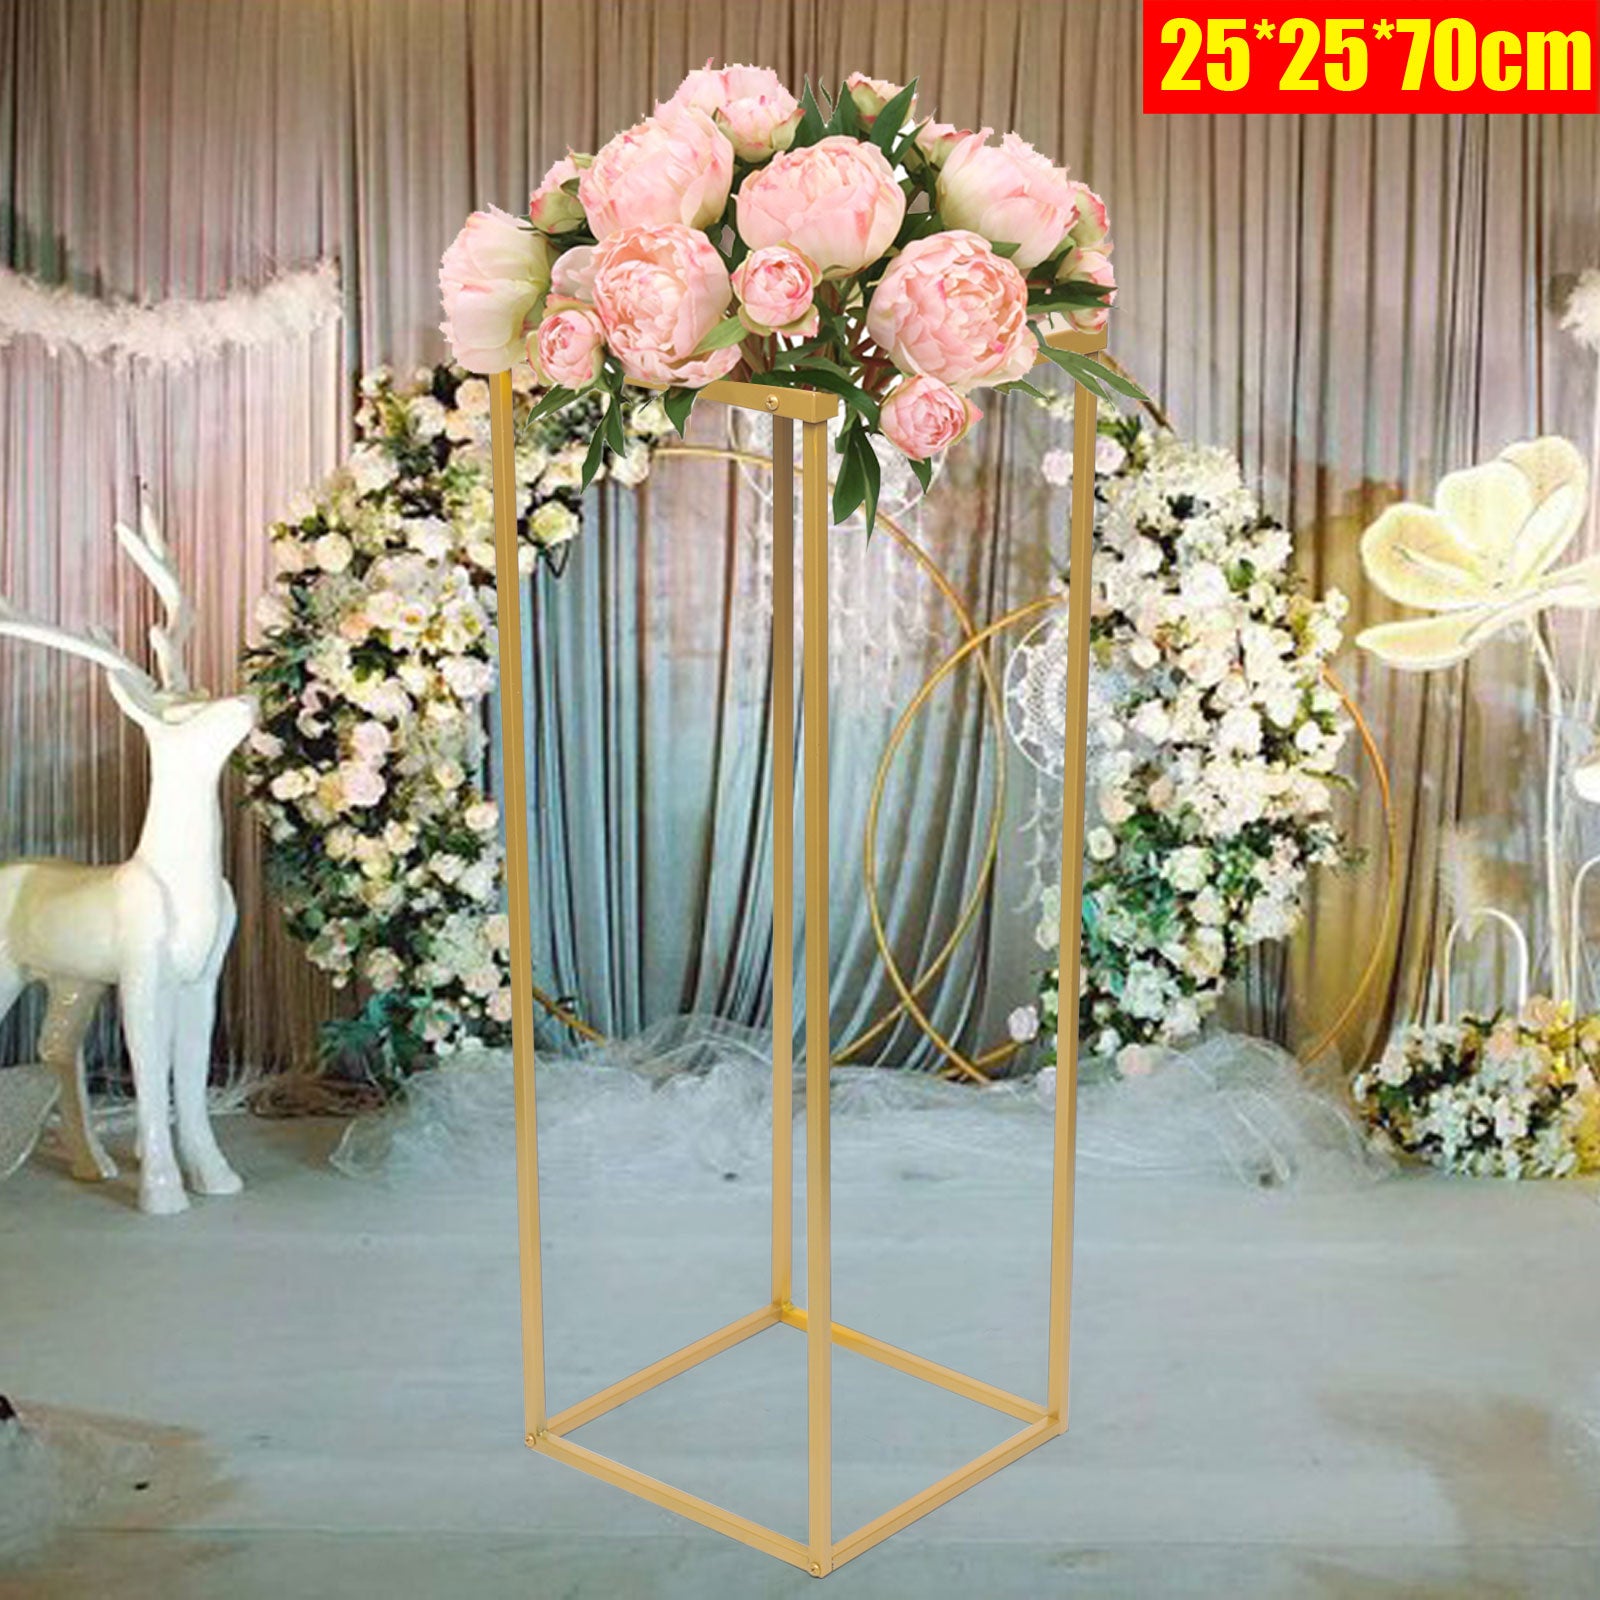 70 cm supporto rettangolare per fiori di matrimonio, in metallo, per decorazione per matrimonio